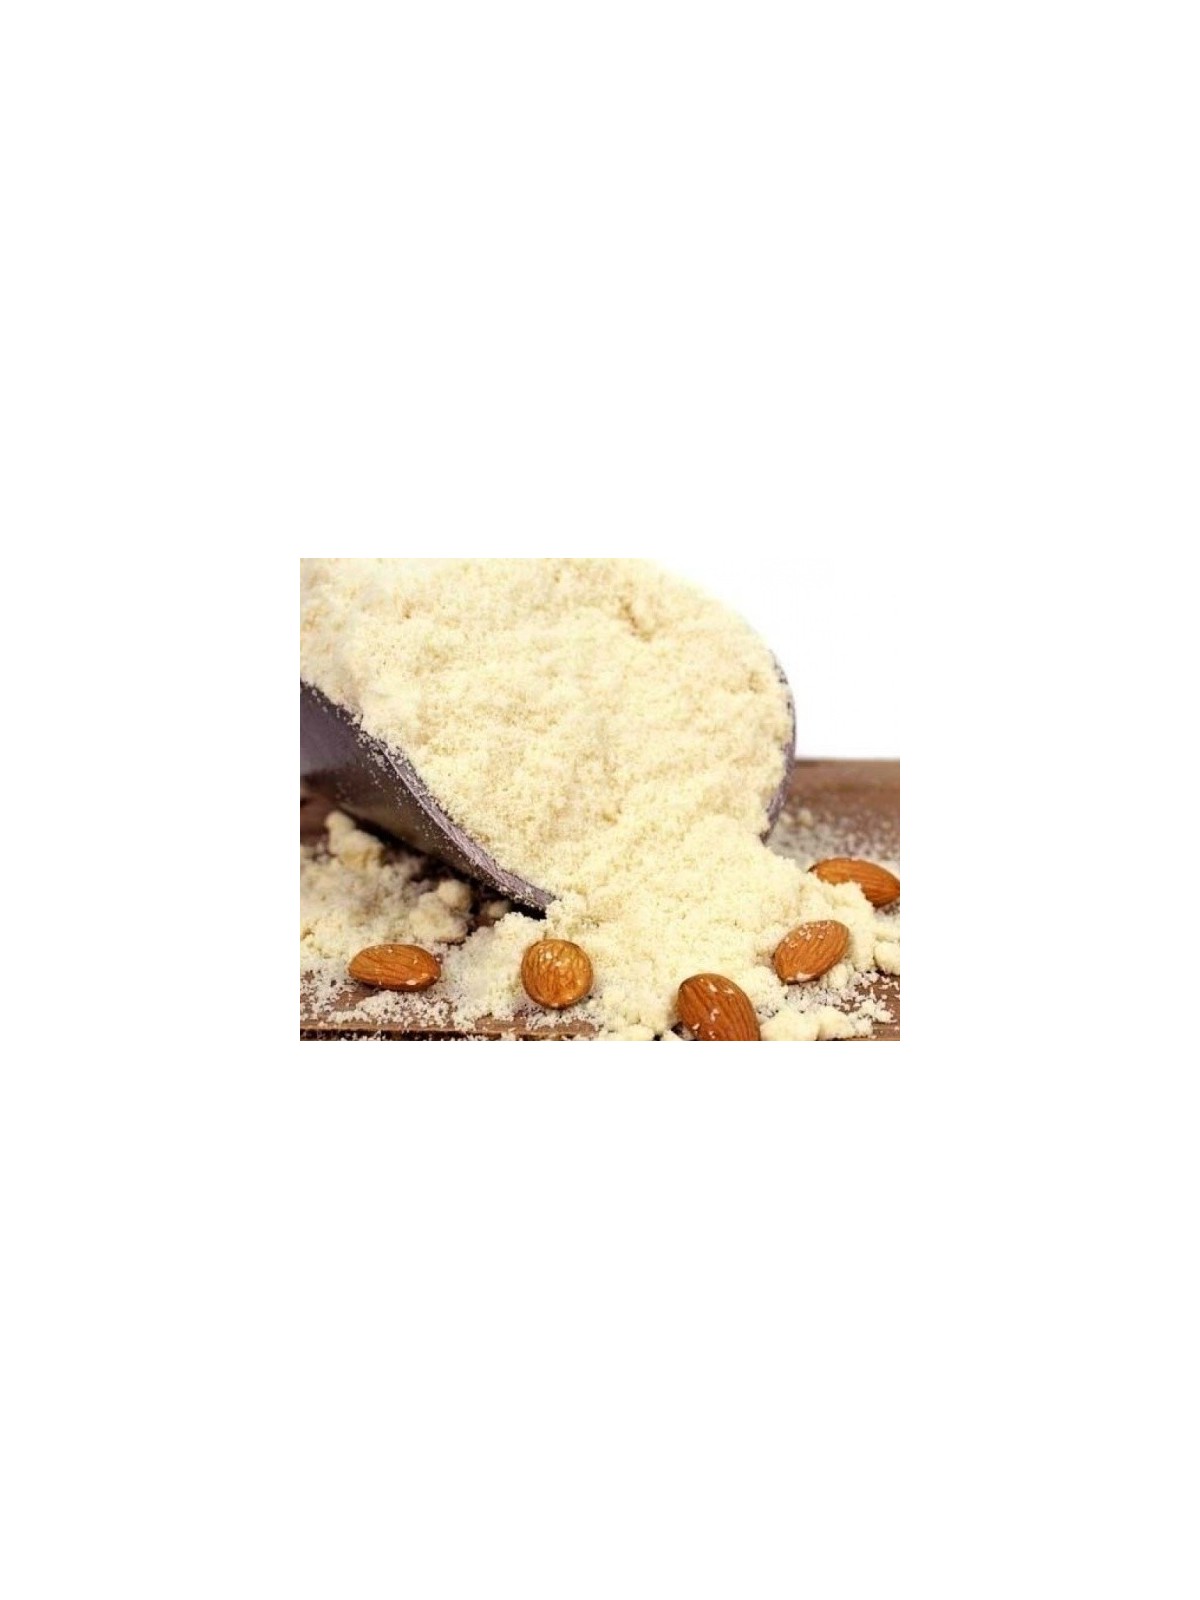 FINE Almond flour 100% - 1kg